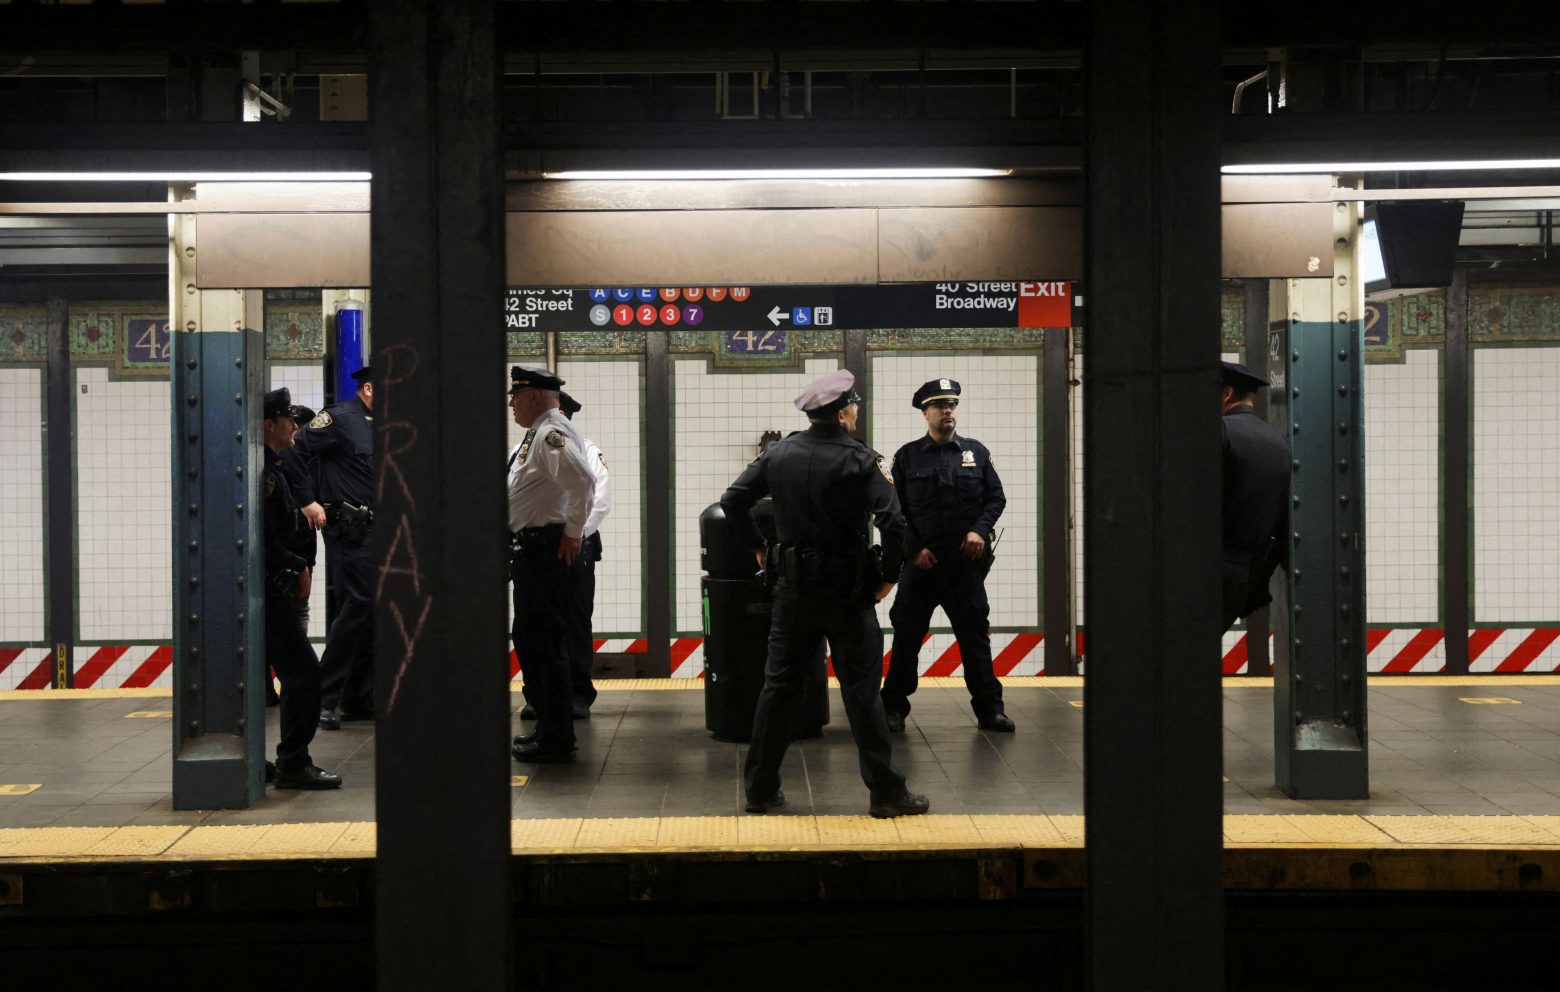 Νέα Υόρκη: Ο ένοπλος κυκλοφορεί ακόμα και είναι επικίνδυνος λέει ο κυβερνήτης της πόλης - Στους 16 οι τραυματίες